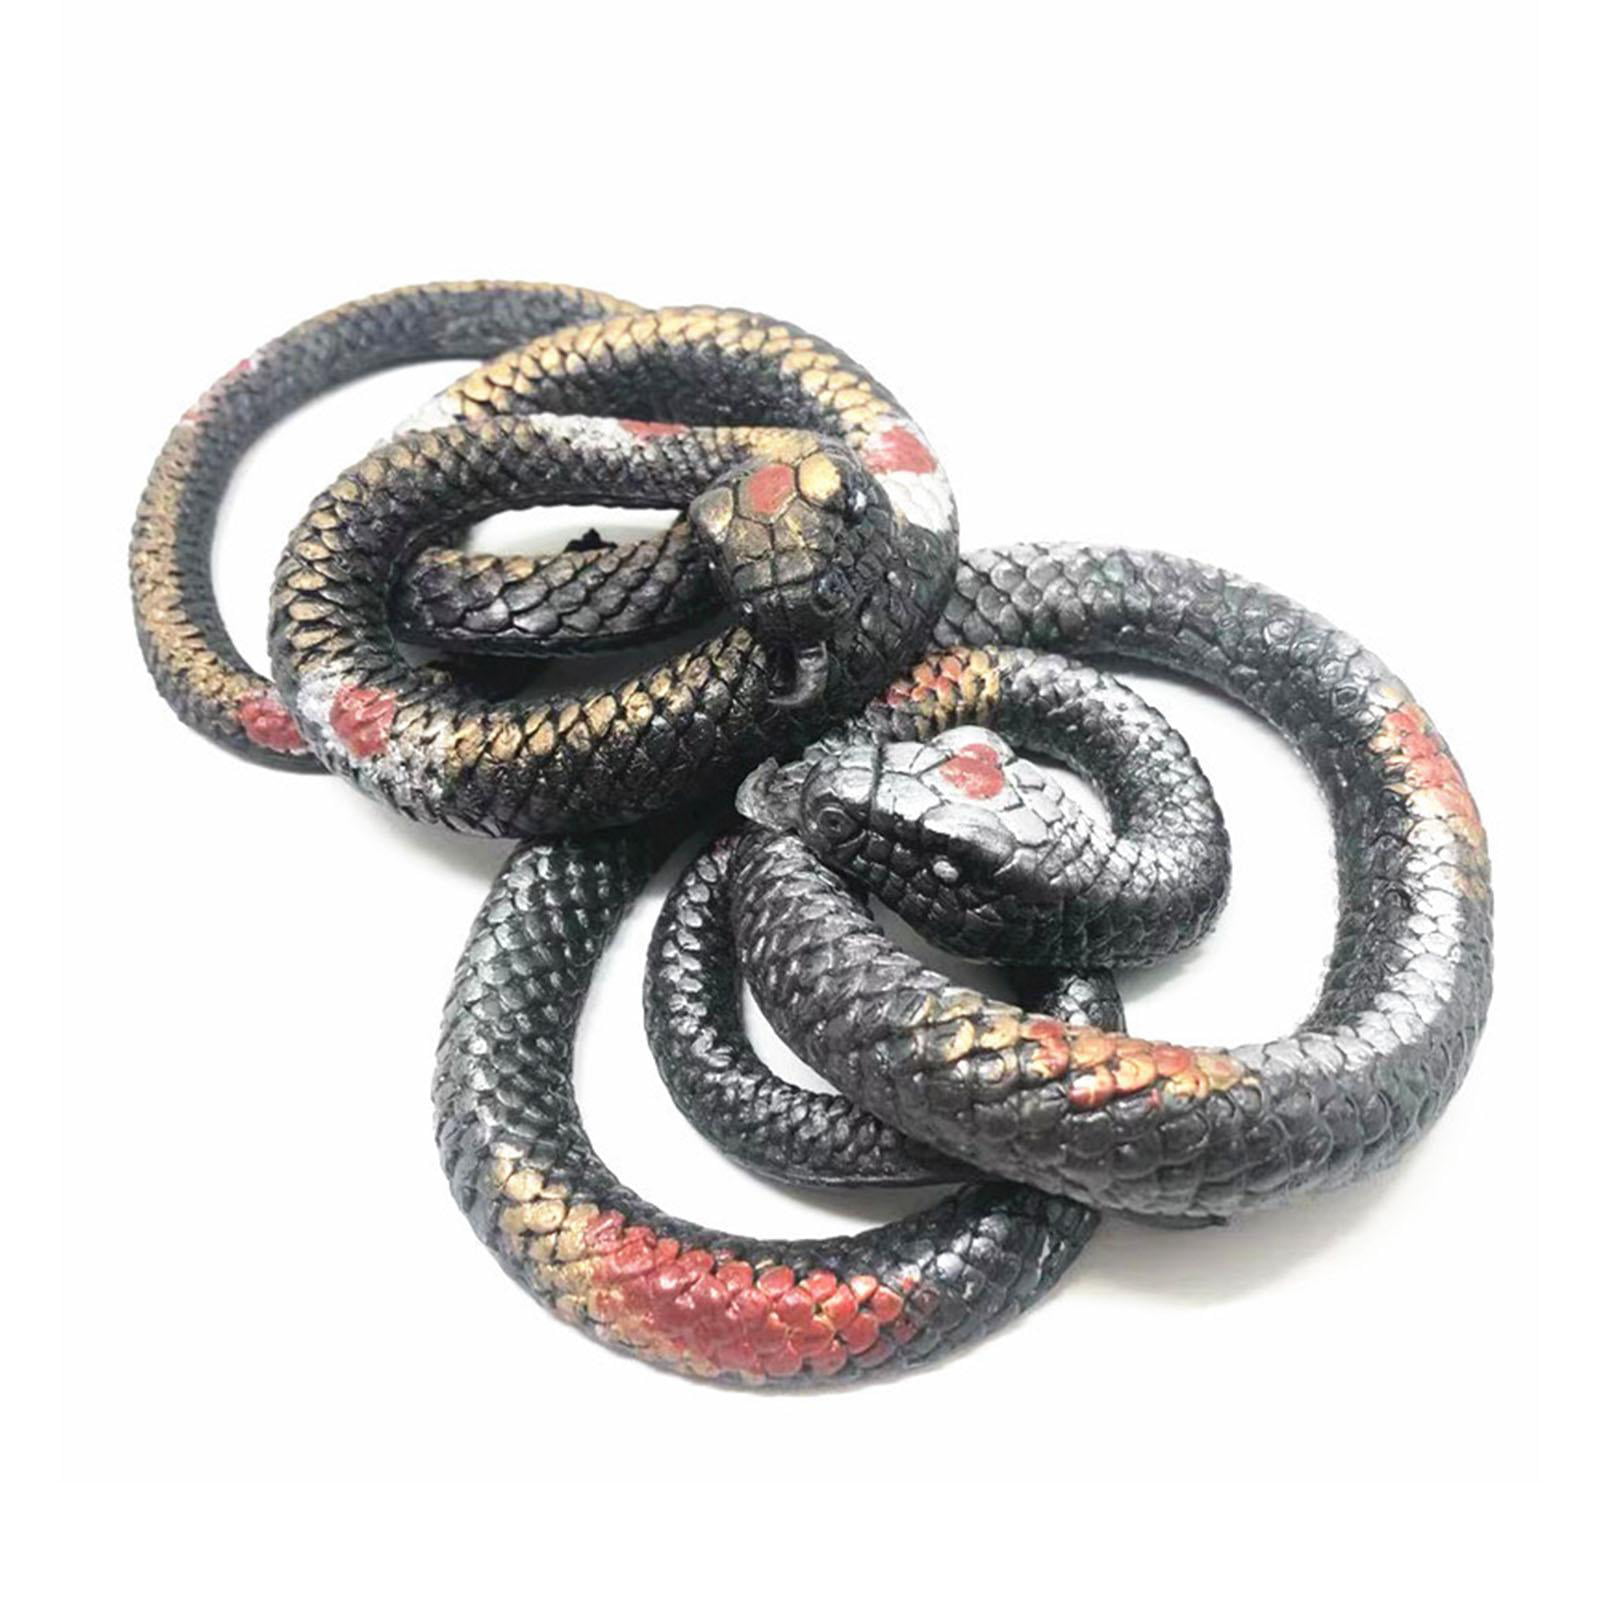 1Pc Halloween Funny Rubber Lifelike Snakes Scary Gag Gift Prank Joke Toys Snake 